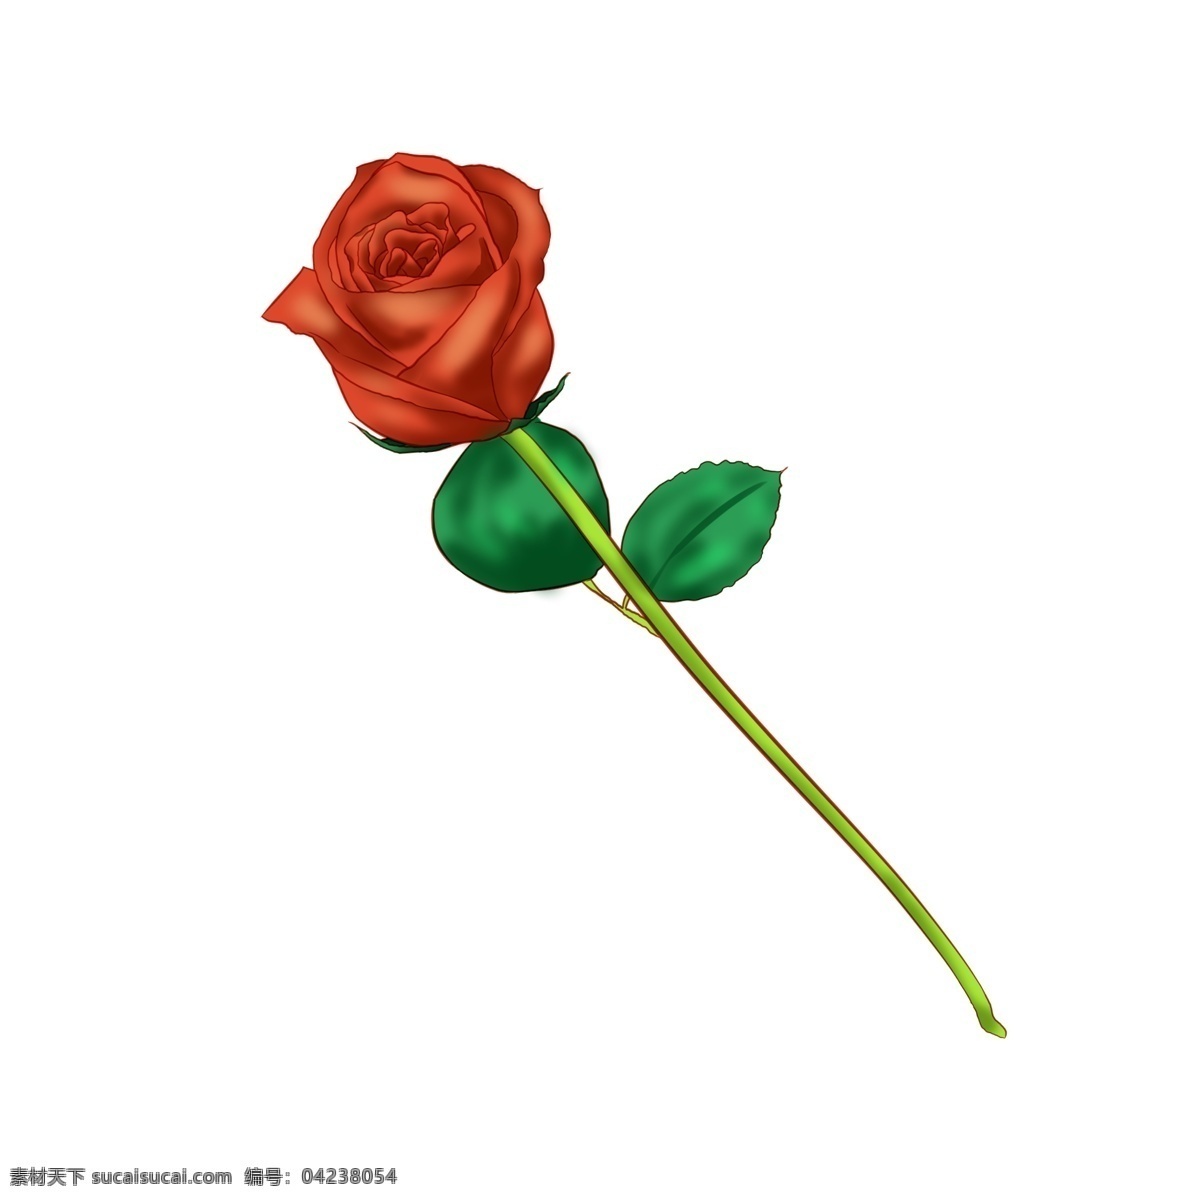 情人节 红色 玫瑰花 插画 红色玫瑰花 红色花朵 红玫瑰 一朵花 情人节送花 鲜艳的花朵 玫瑰花插画 绿色的枝叶